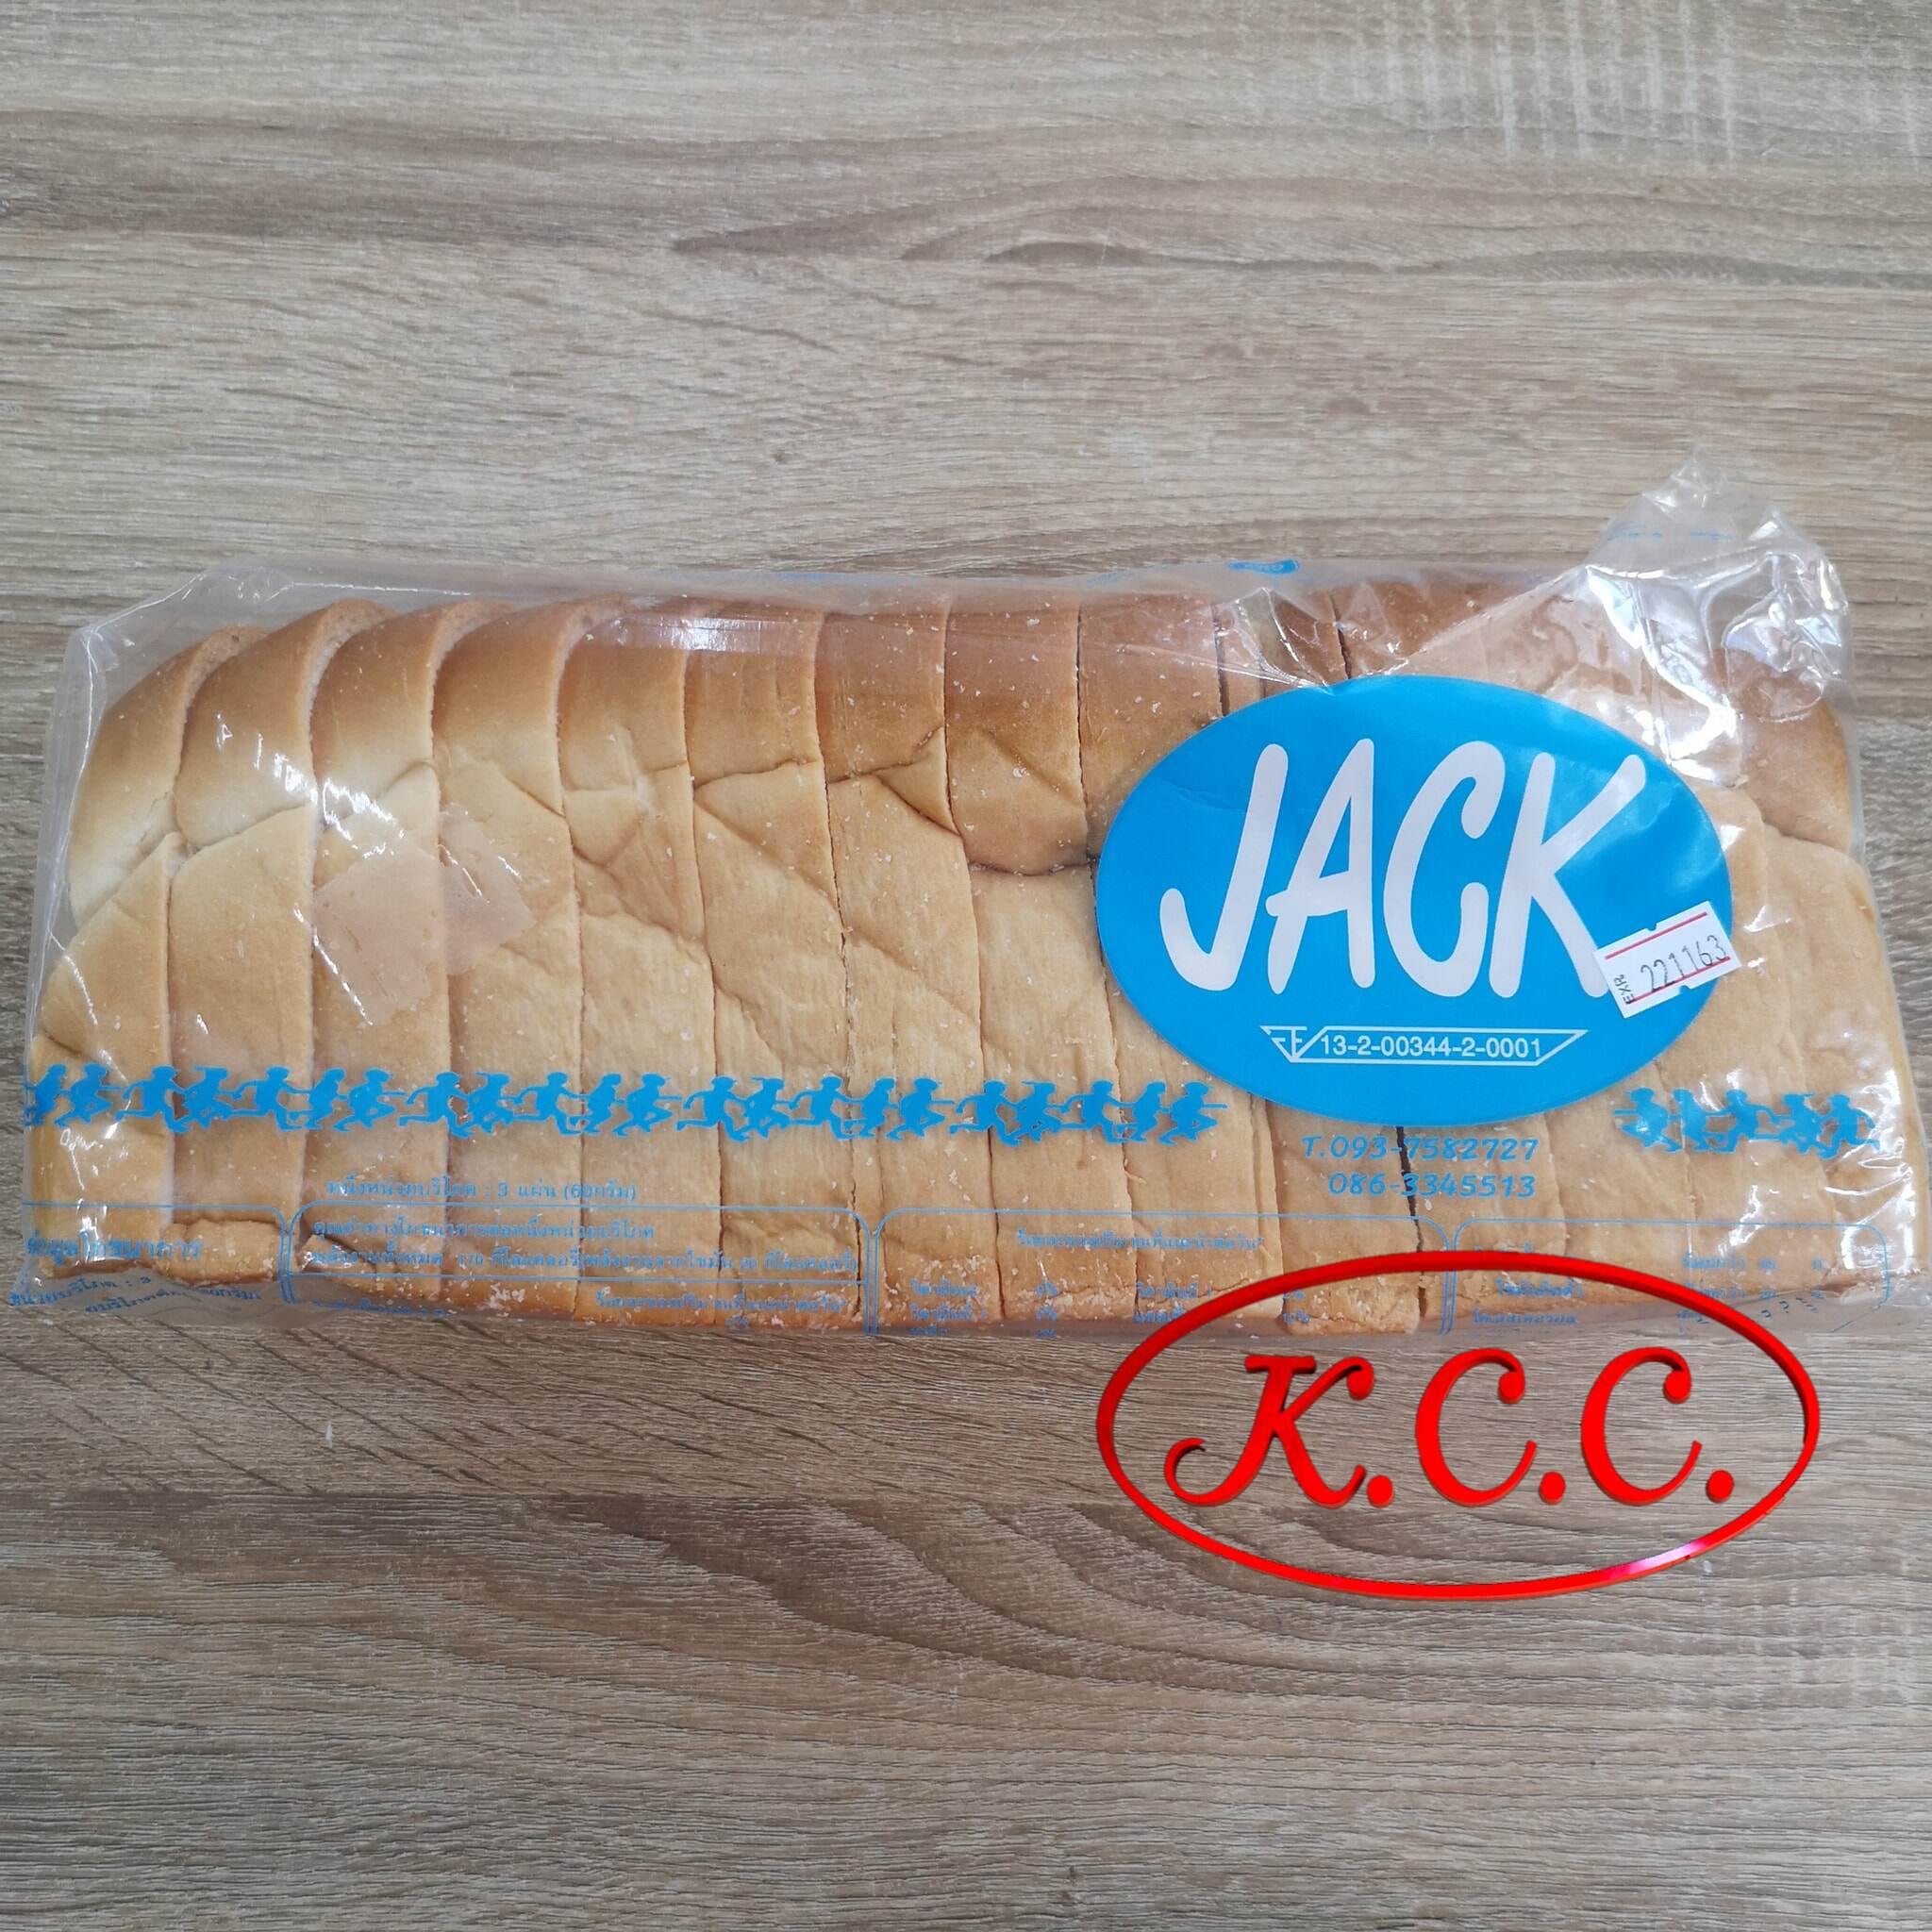 KCC ขนมปังกะโหลก ขนมปัง กะโหลก หนา 2 ซม. สินค้าล็อตใหม่ (โปรดอ่านรายละเอียดสินค้าก่อนสั่ง) ล็อตใหม่เข้าทุก จันทร์ กับ ศุกร์